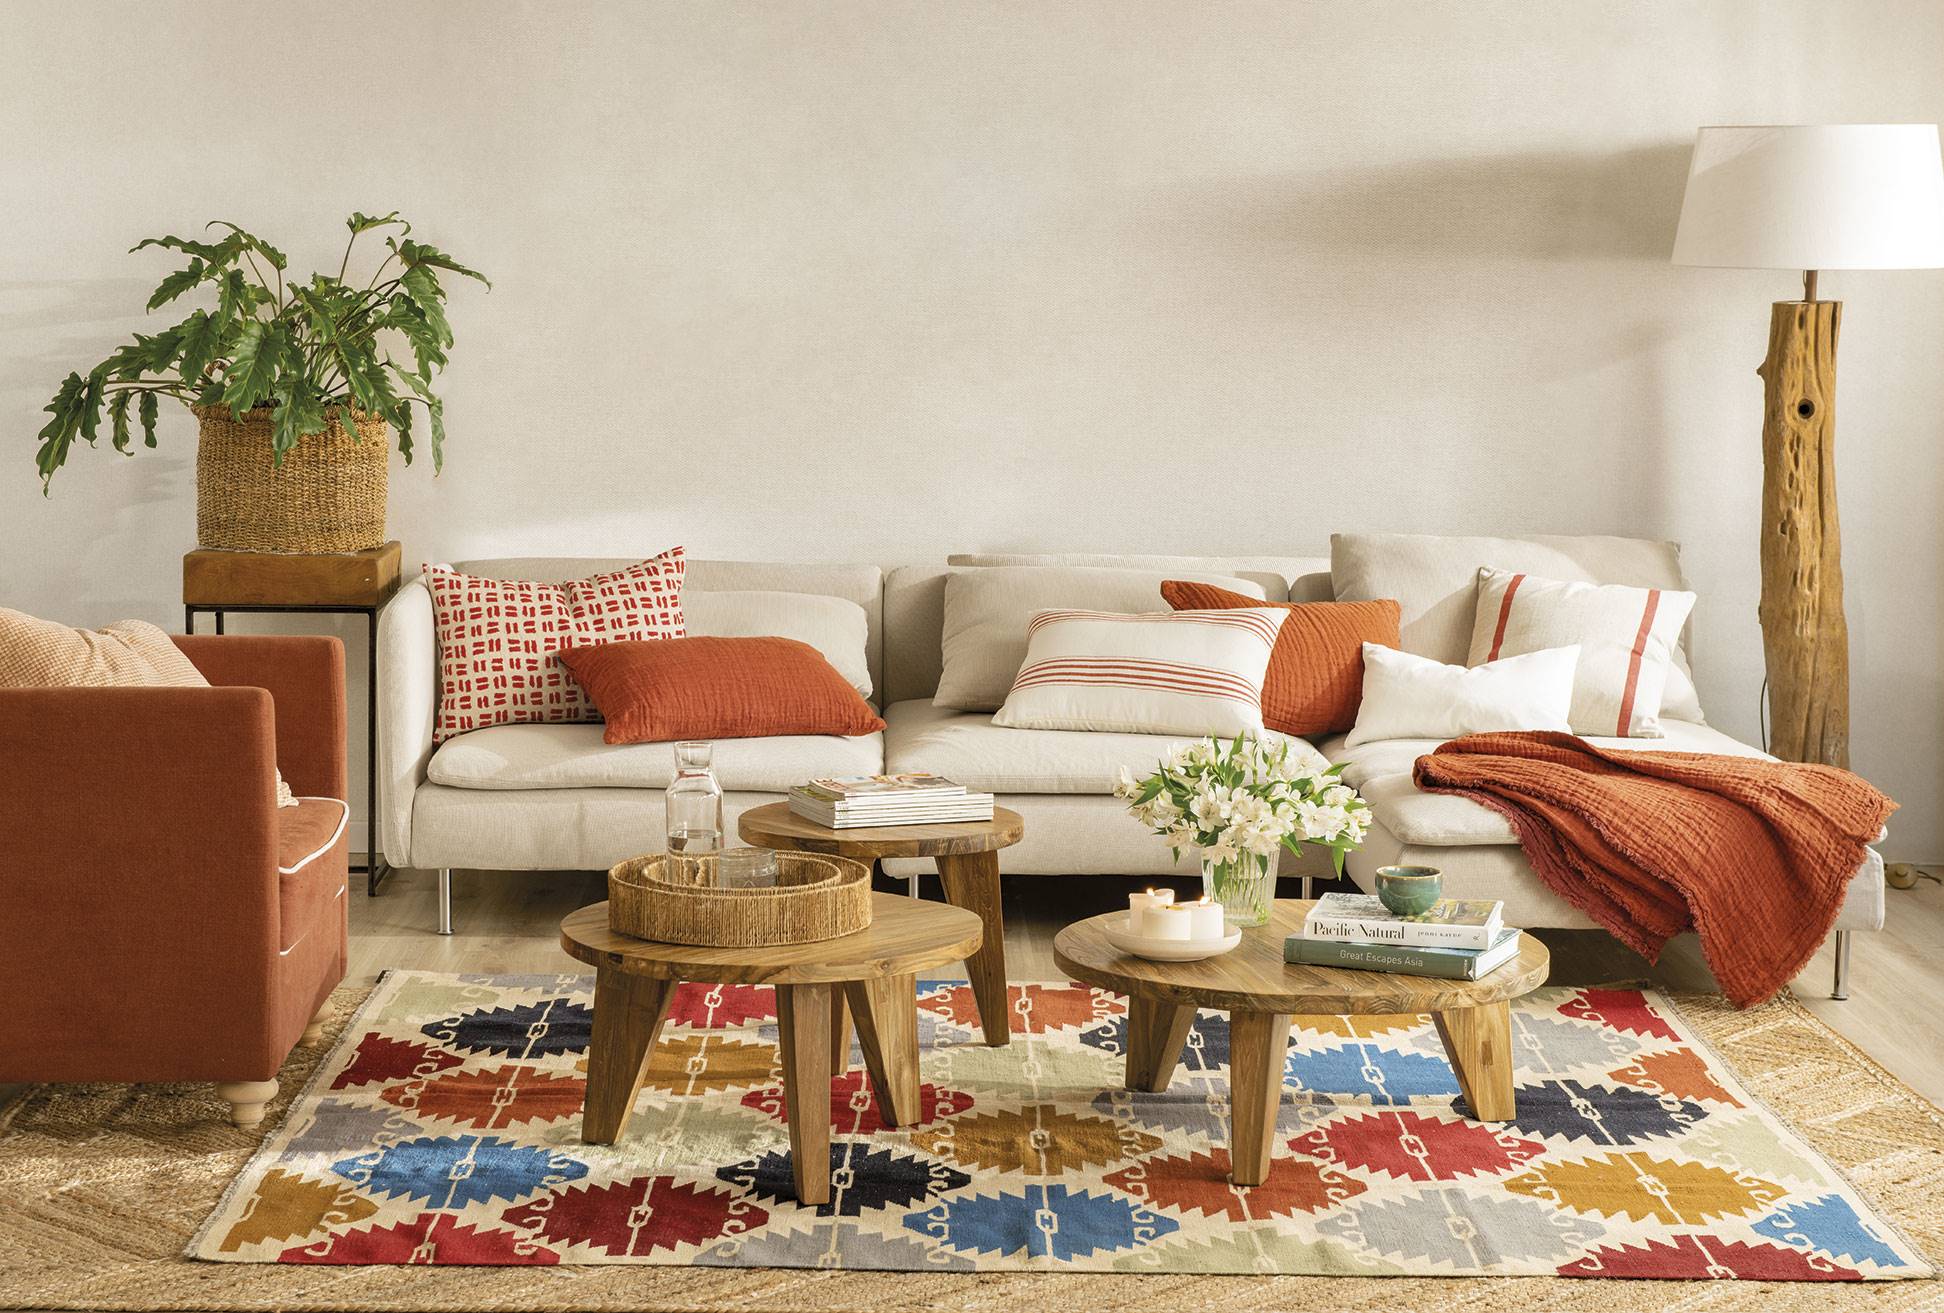 Salón con sofá, butaca y textiles en color teja, tres mesas de centro de madera y alfombra kilim con rombos de colores.